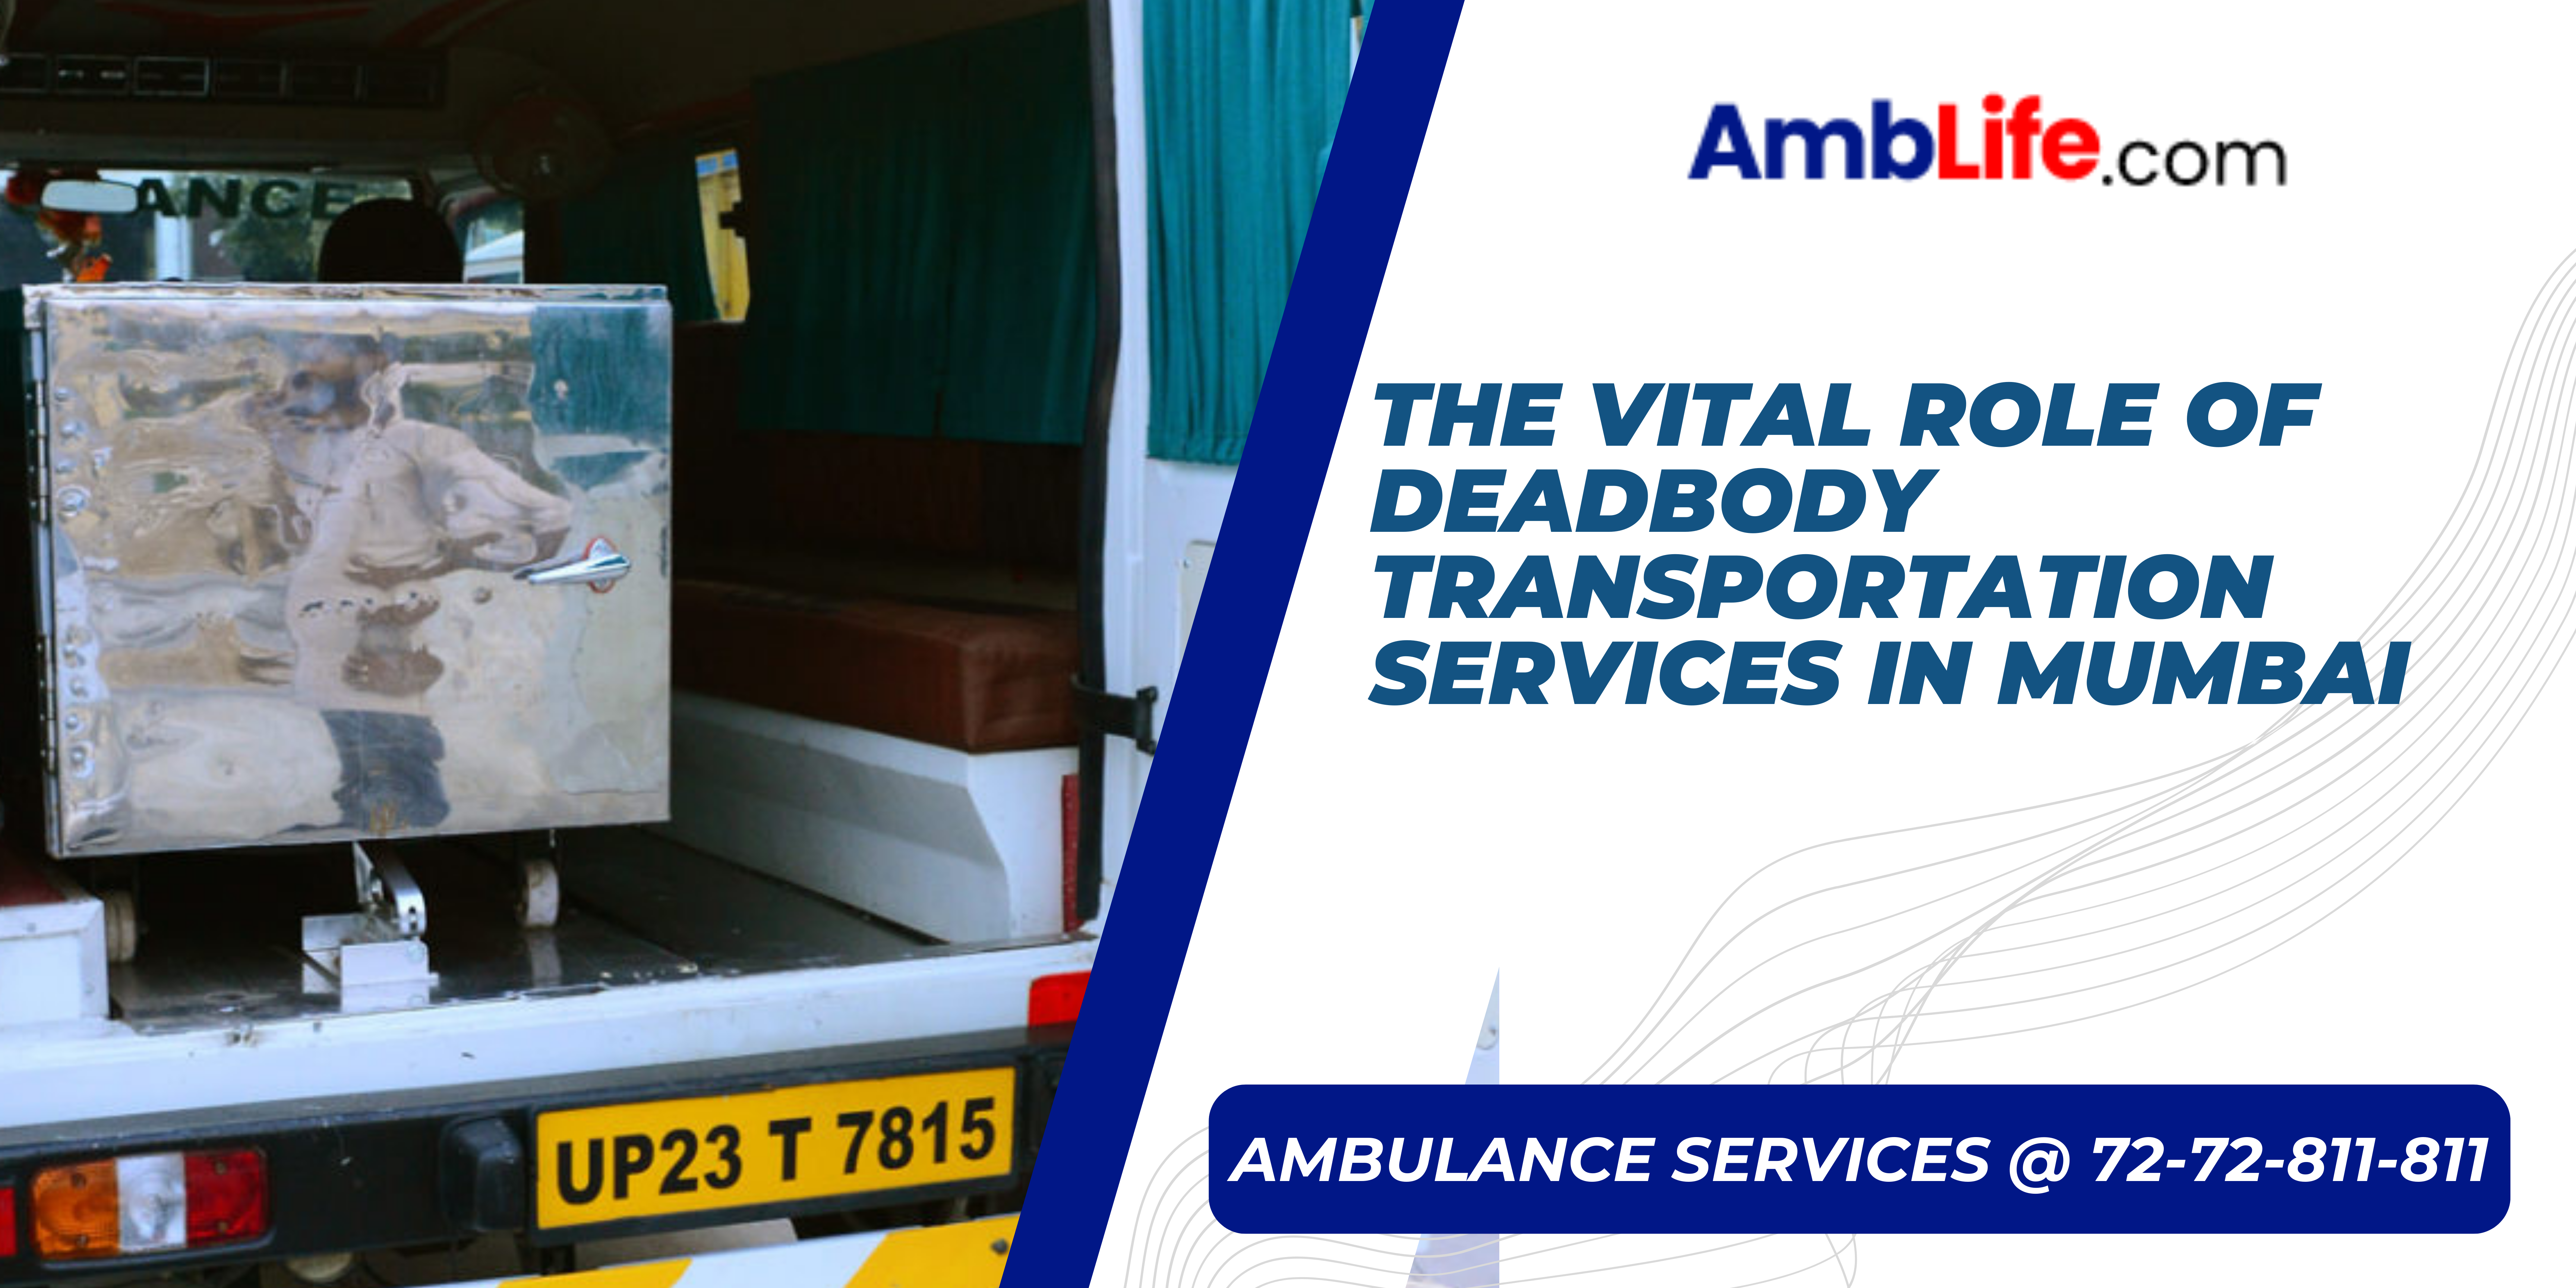 Deadbody Transportation Services in Mumbai